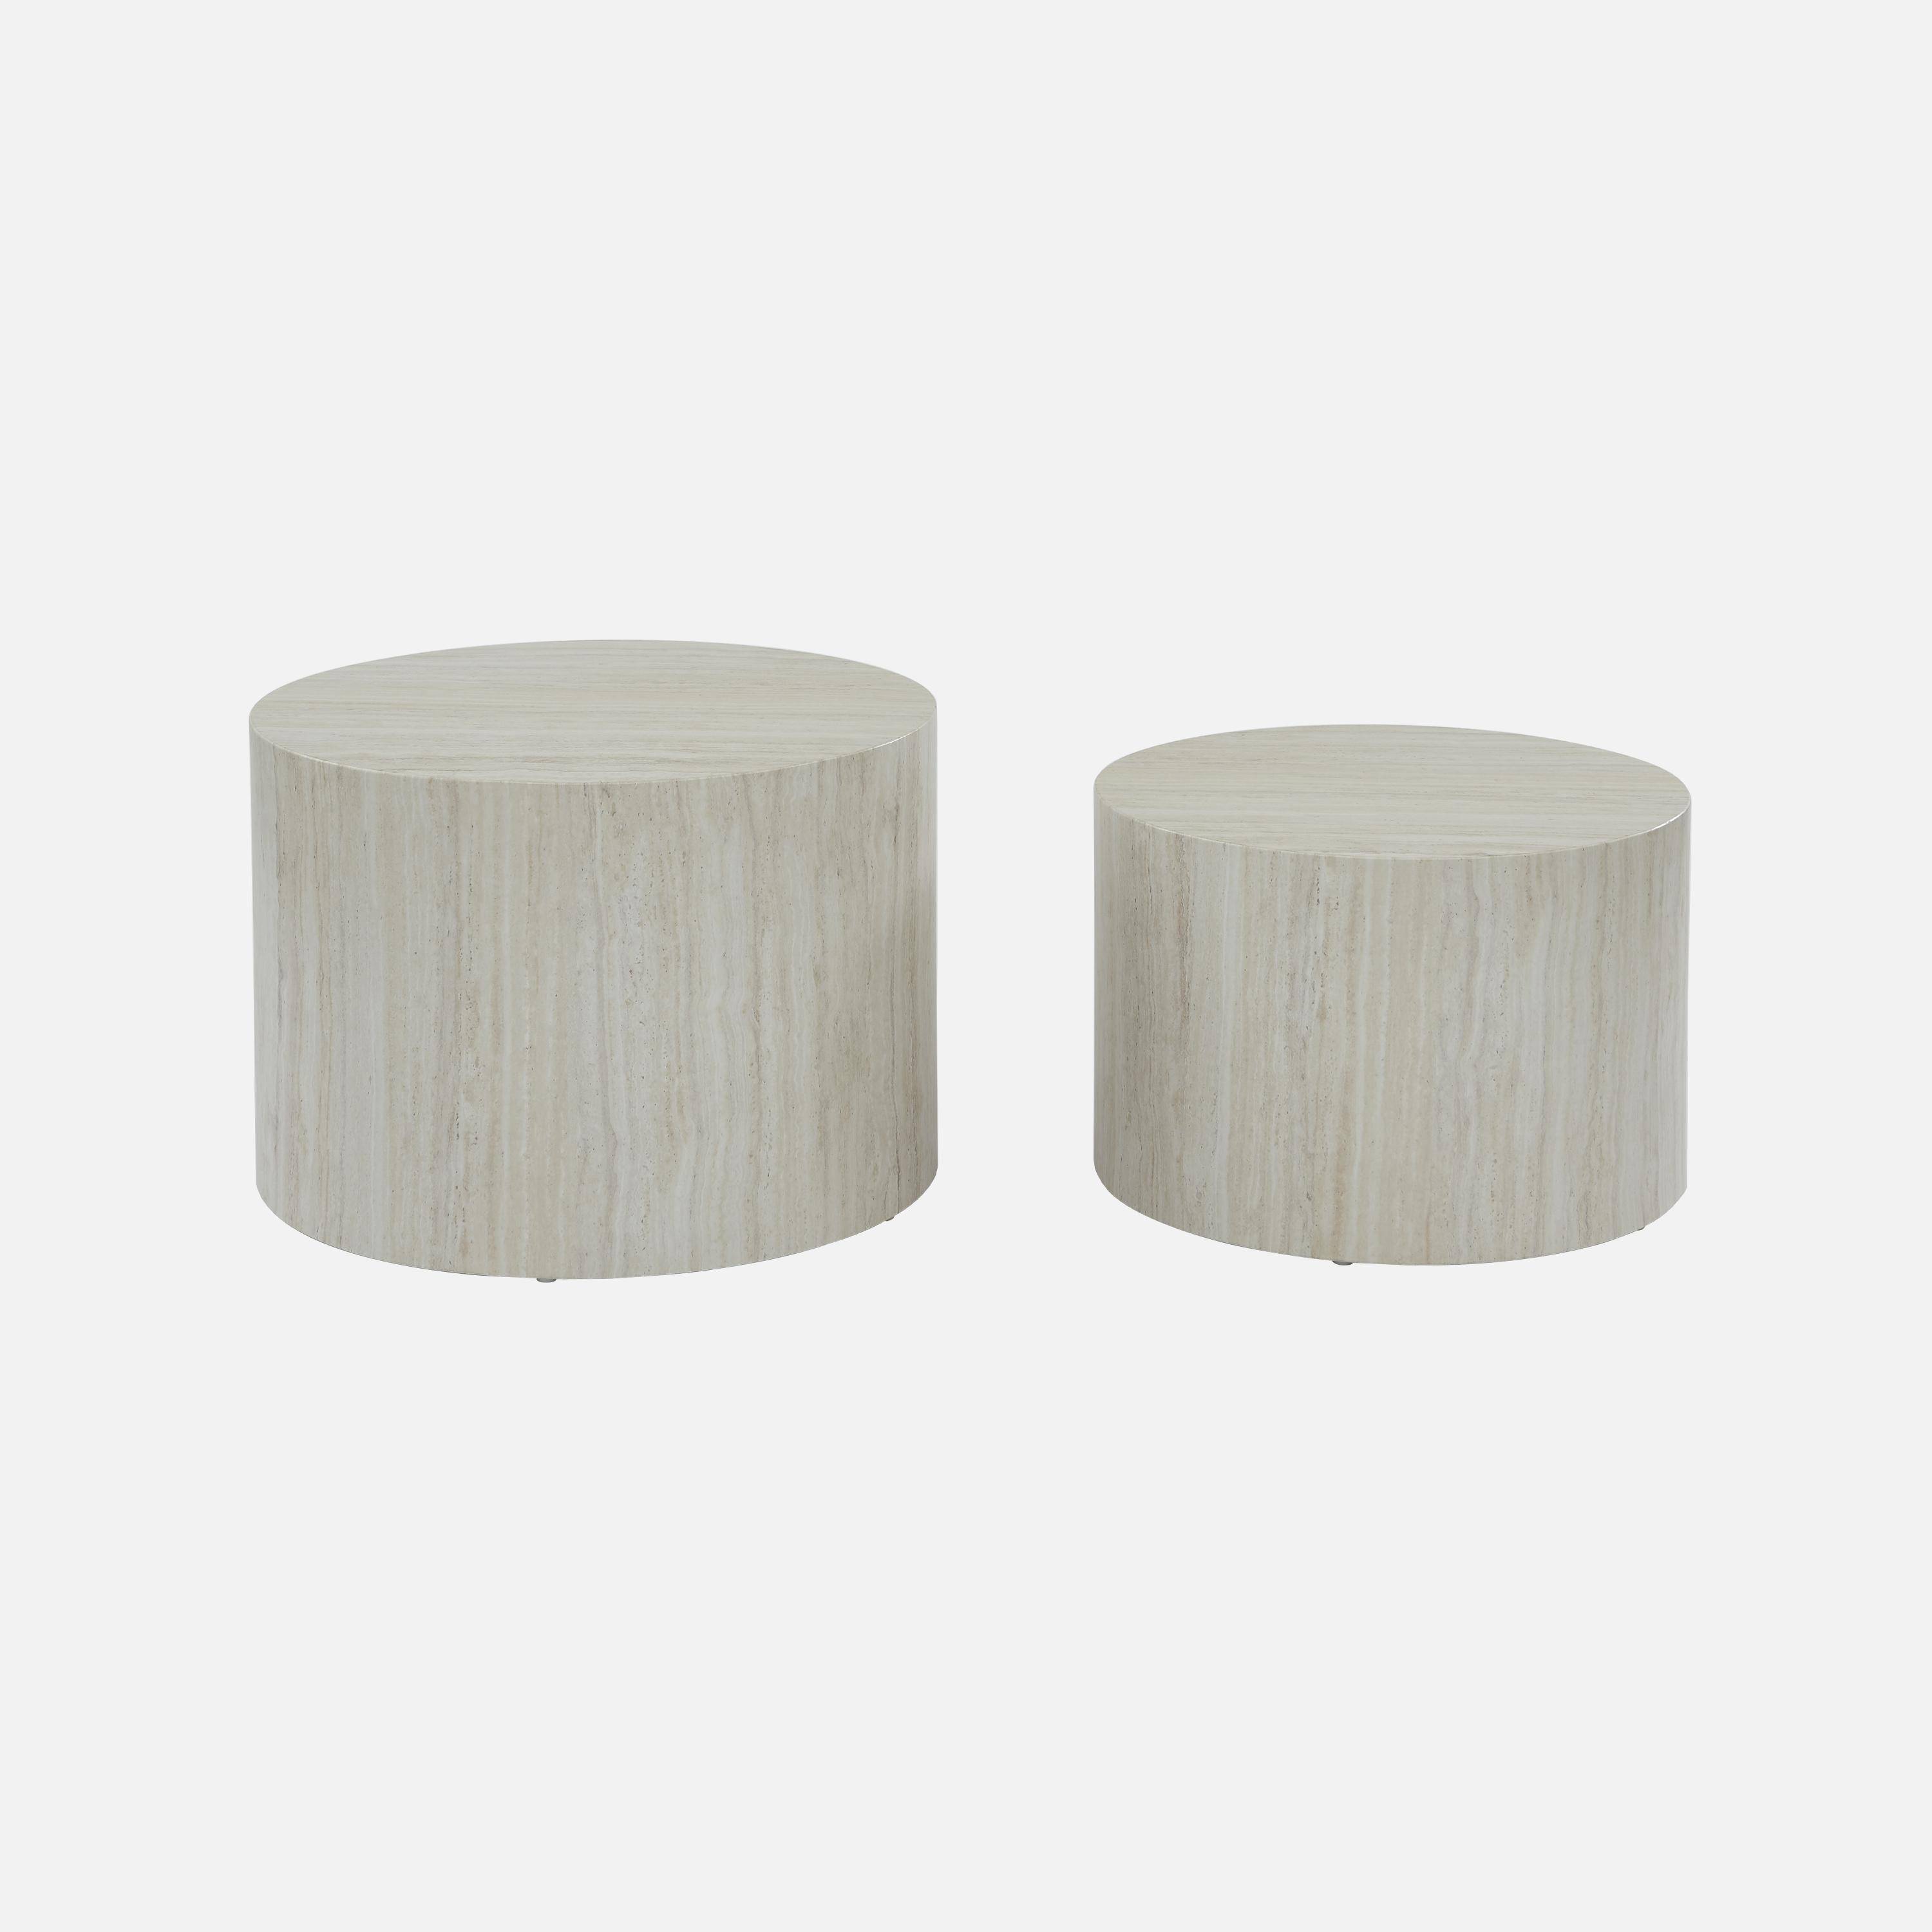 Conjunto de 2 mesas de centro redondas , efeito mármore branco, mesas de encaixe Ø58 x A 40cm / Ø50 x A 33cm,sweeek,Photo4